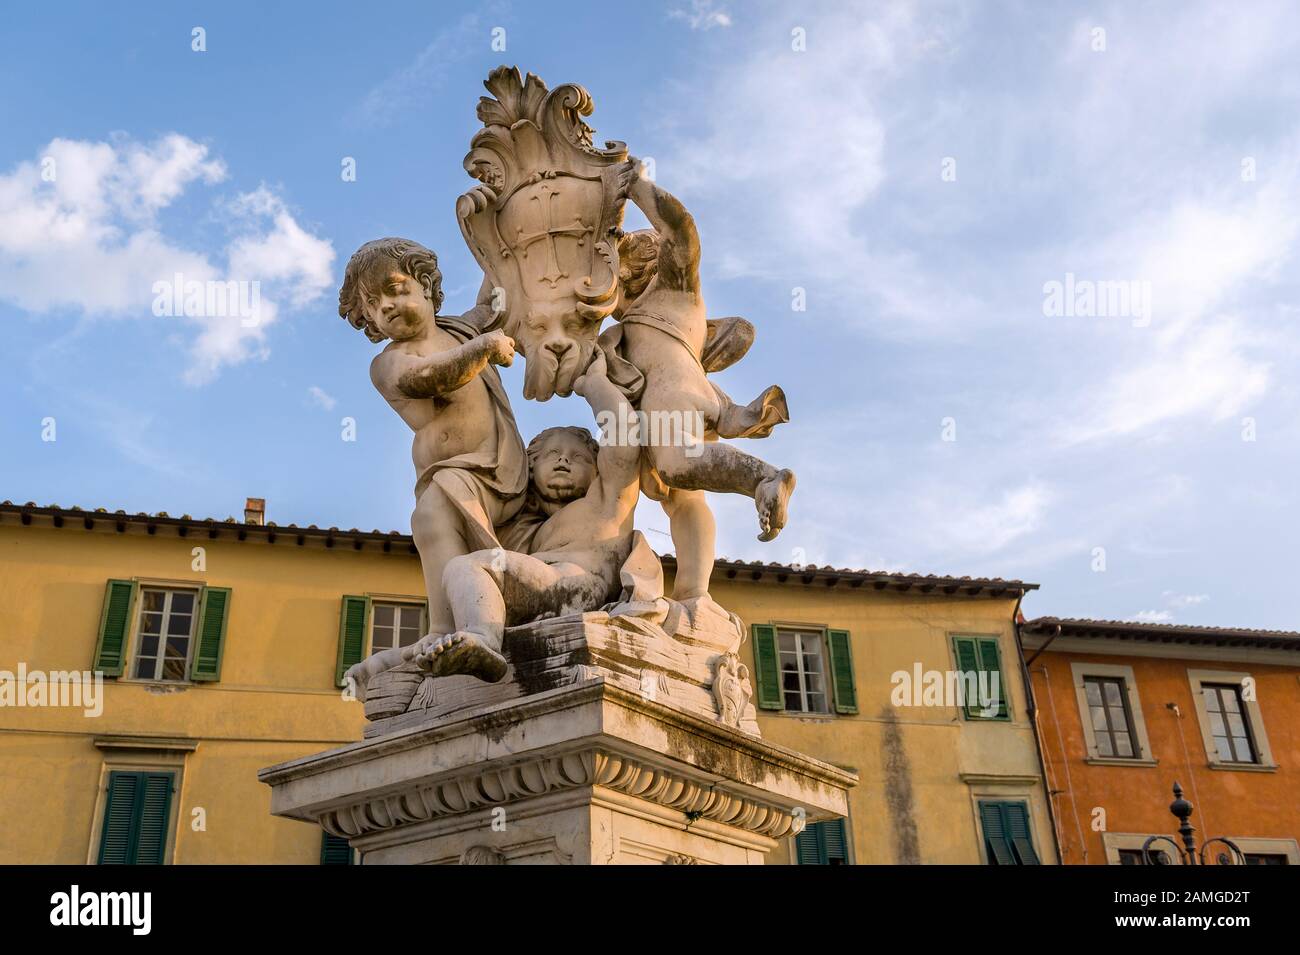 Putti fountain sculpture a sunset light. Pisa landmarks, Italy. Stock Photo